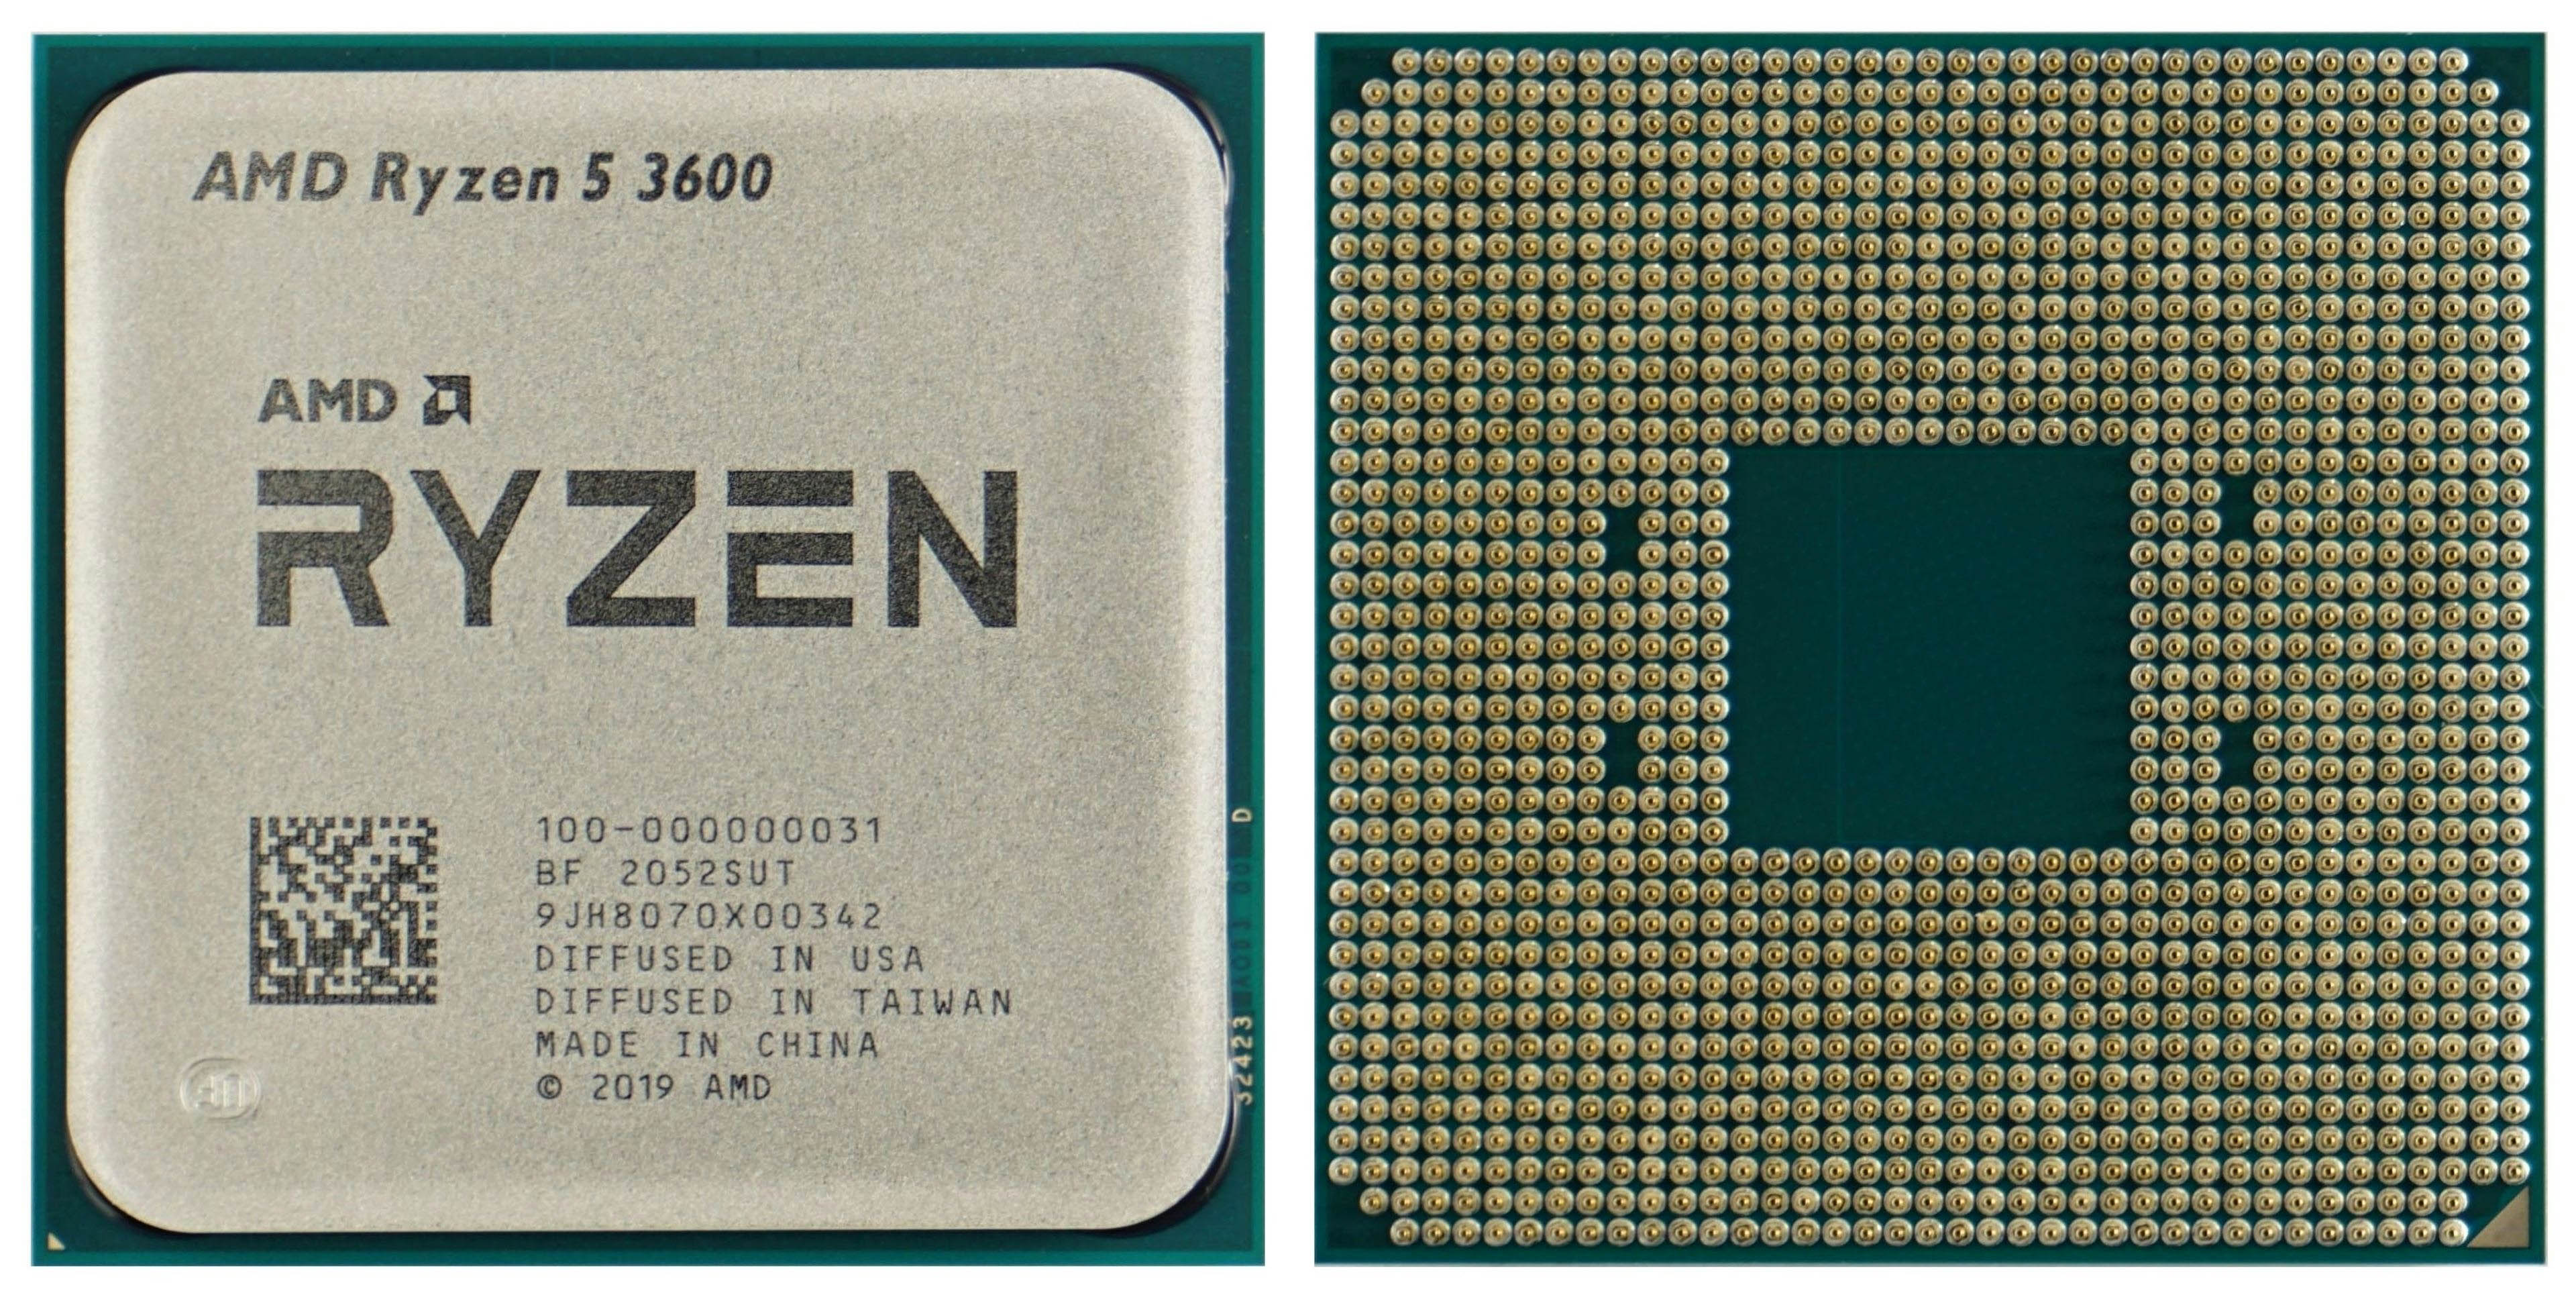 Traditie onderwijs zelf AMD Ryzen 5 3600: Older bestseller head-to-head with new CPUs -  HWCooling.net